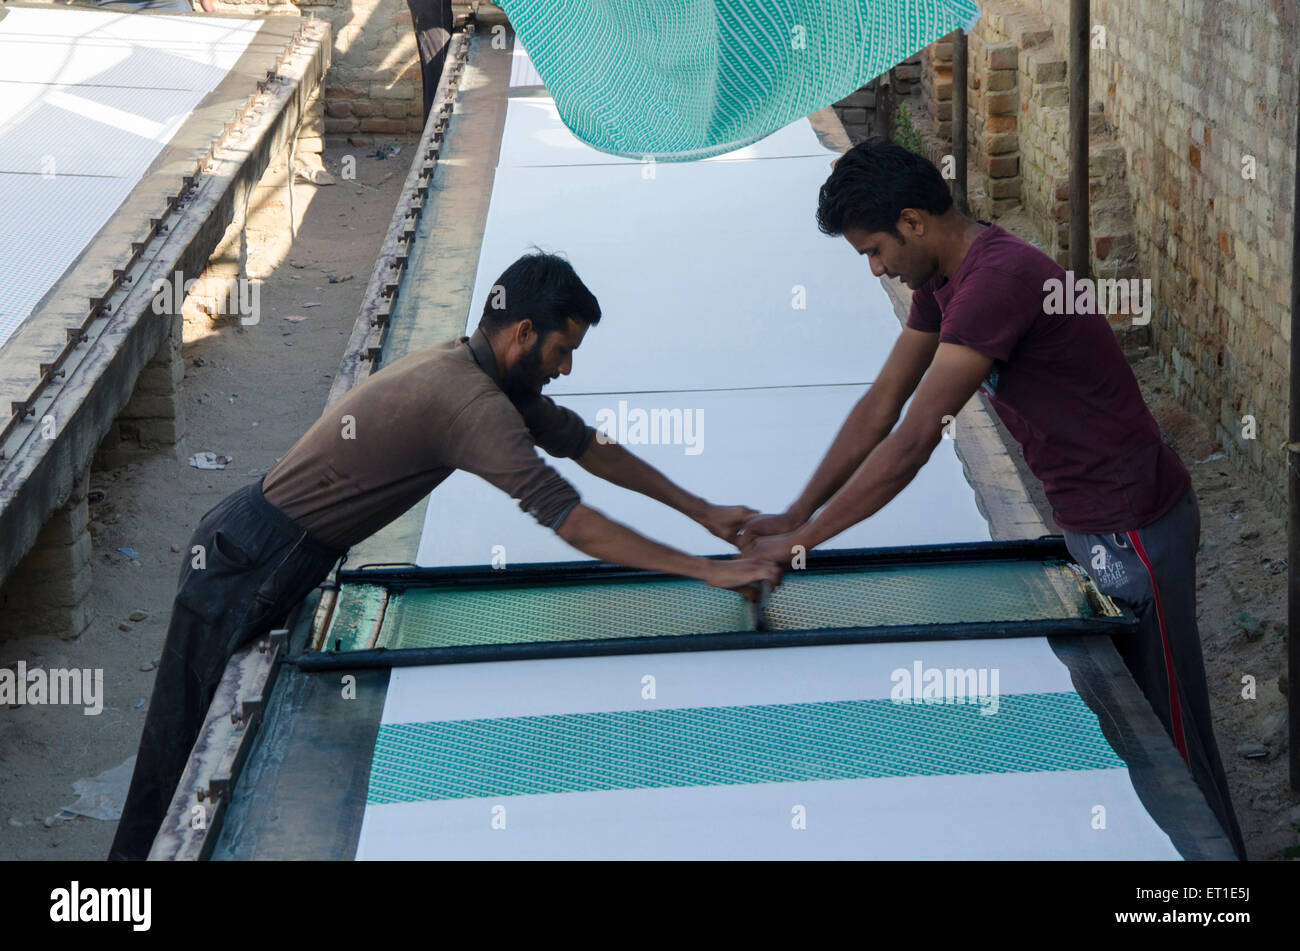 Les travailleurs engagés dans un travail d'impression tissu Bikaner Rajasthan Inde Asie Banque D'Images